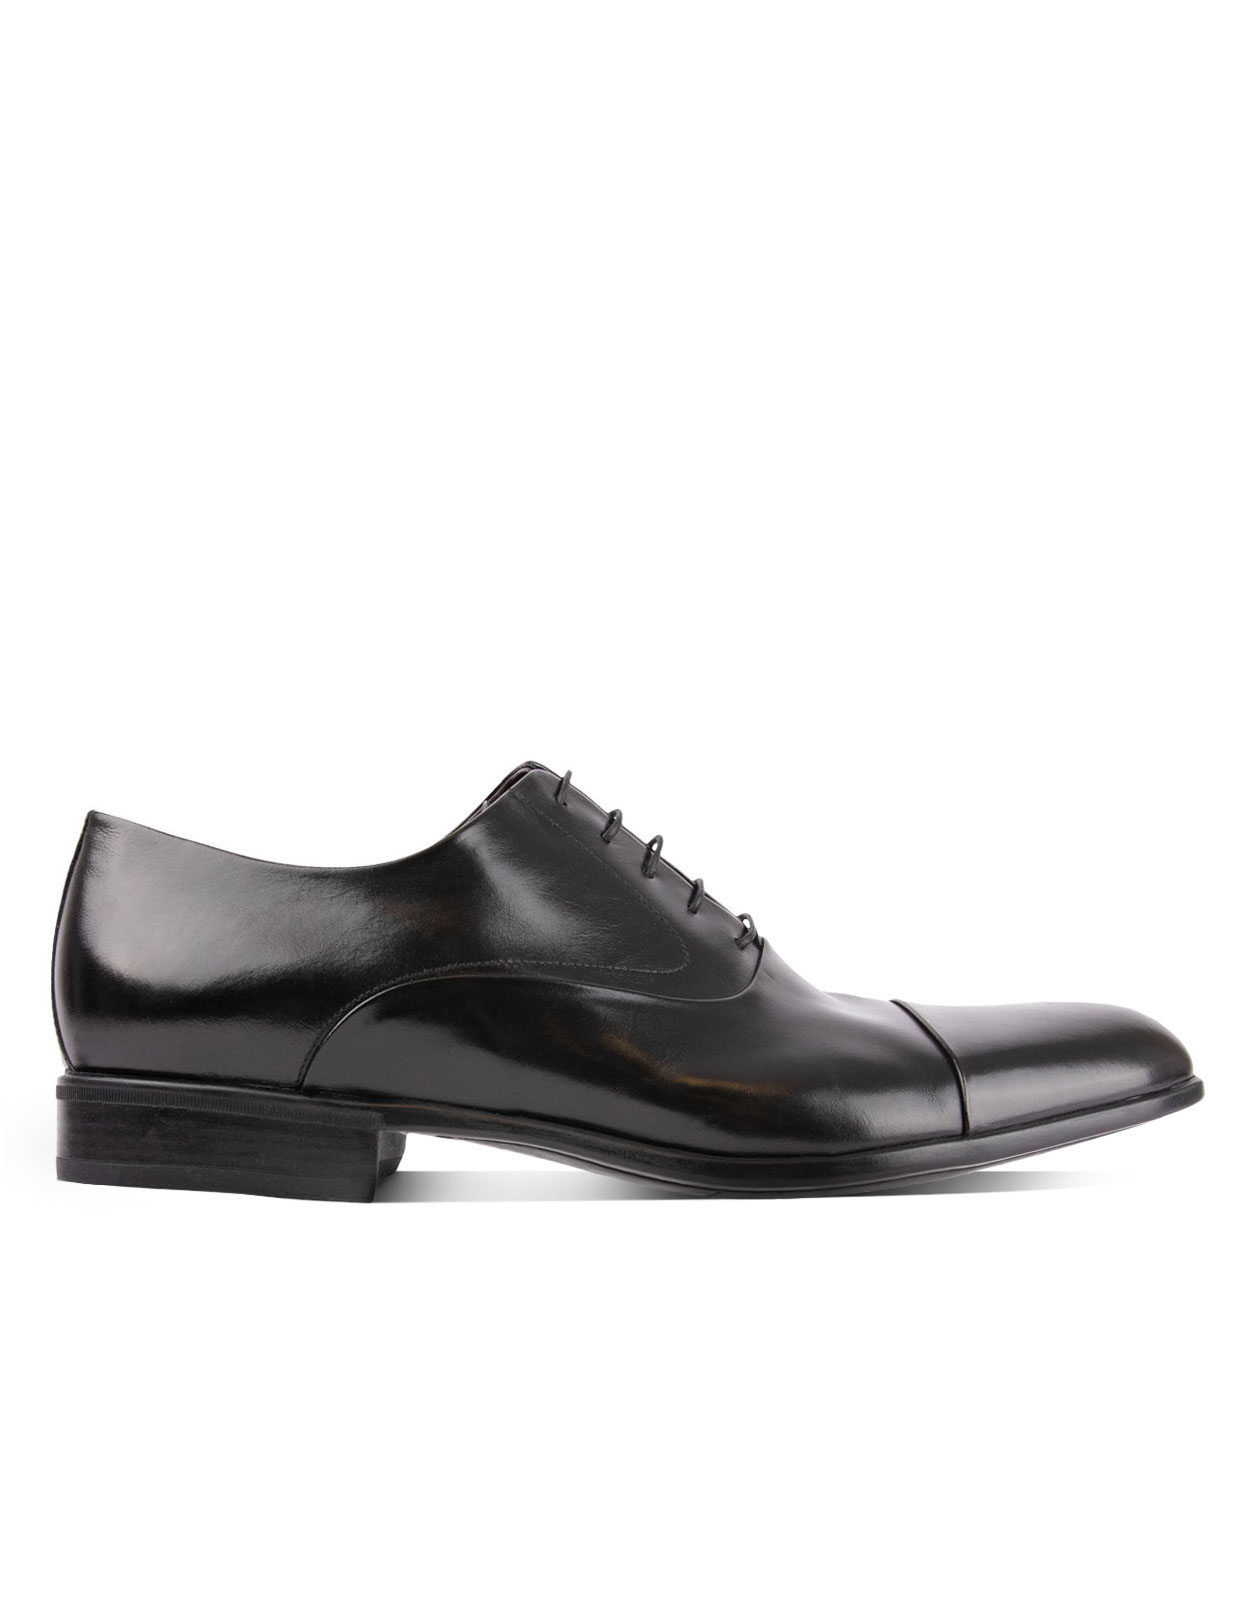 Bruges Oxford Shoe Black Stl 9.5